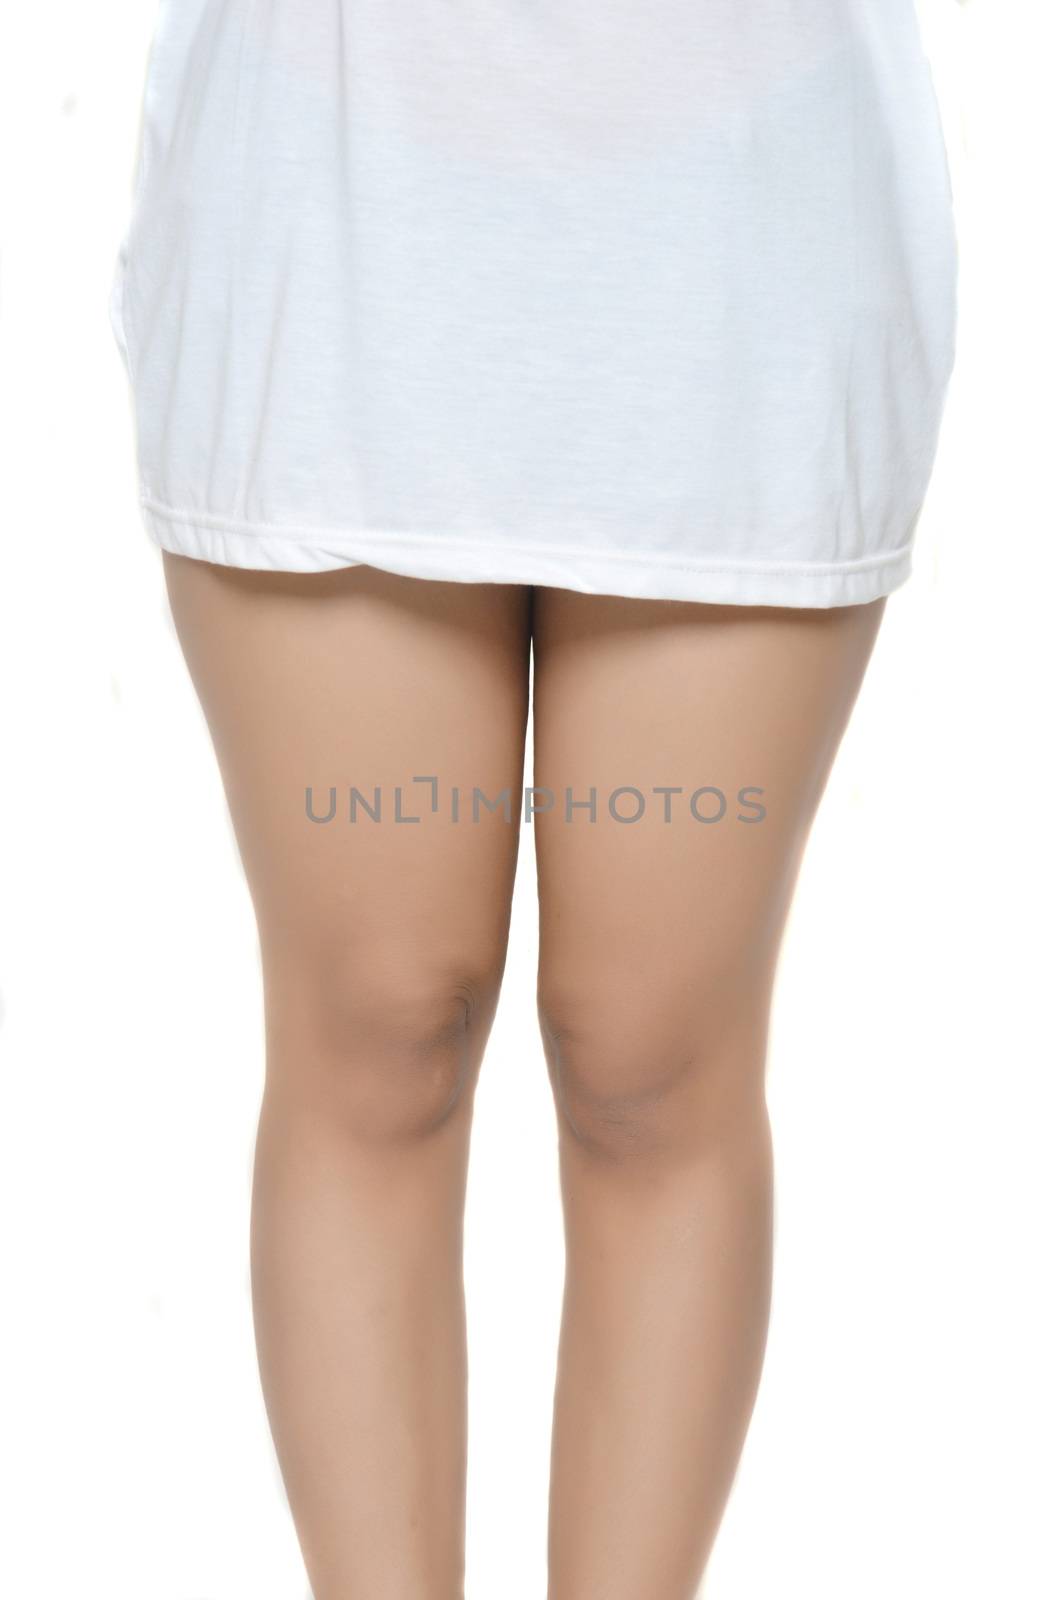 asian young woman's thigh wearing long white shirts